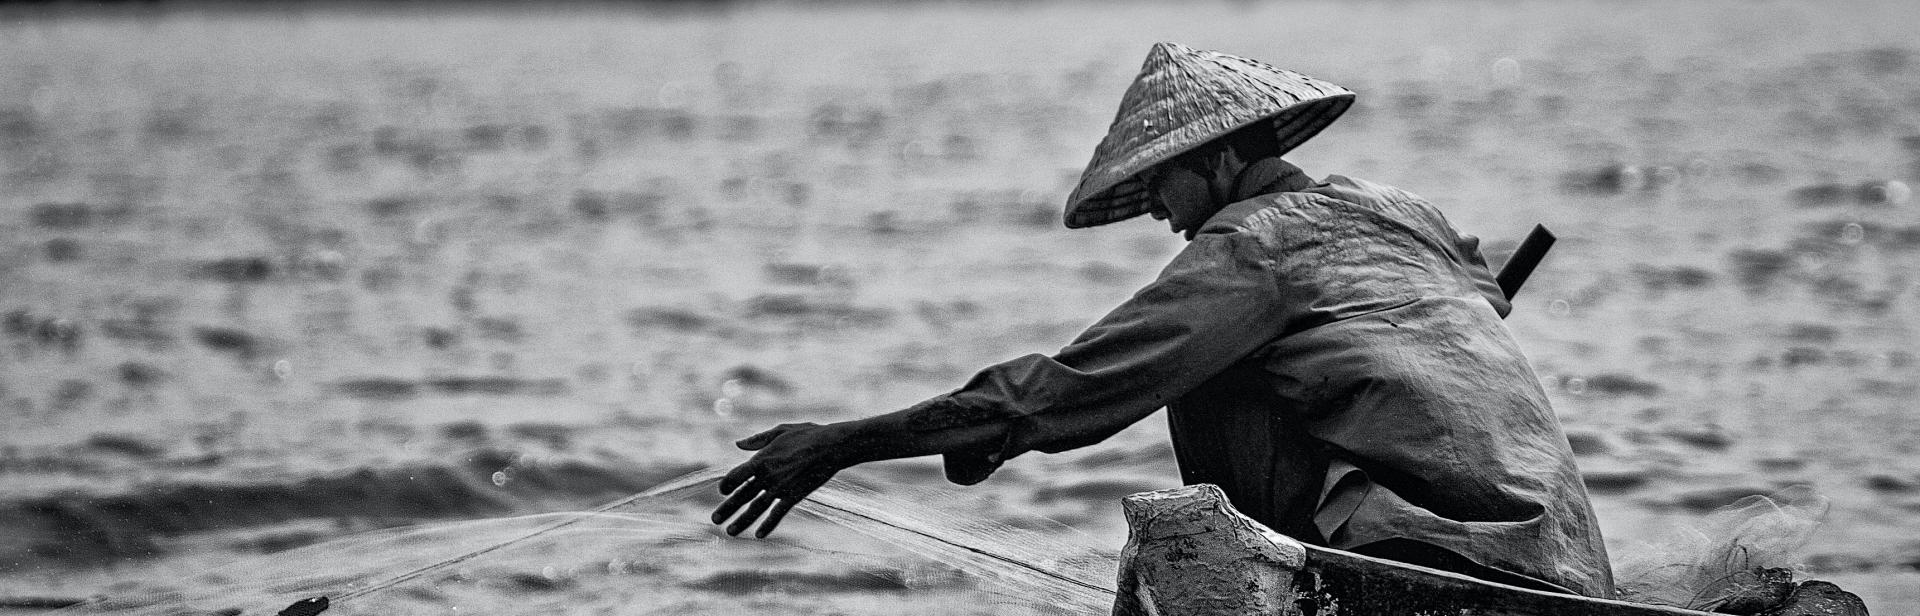 Mekong fisher